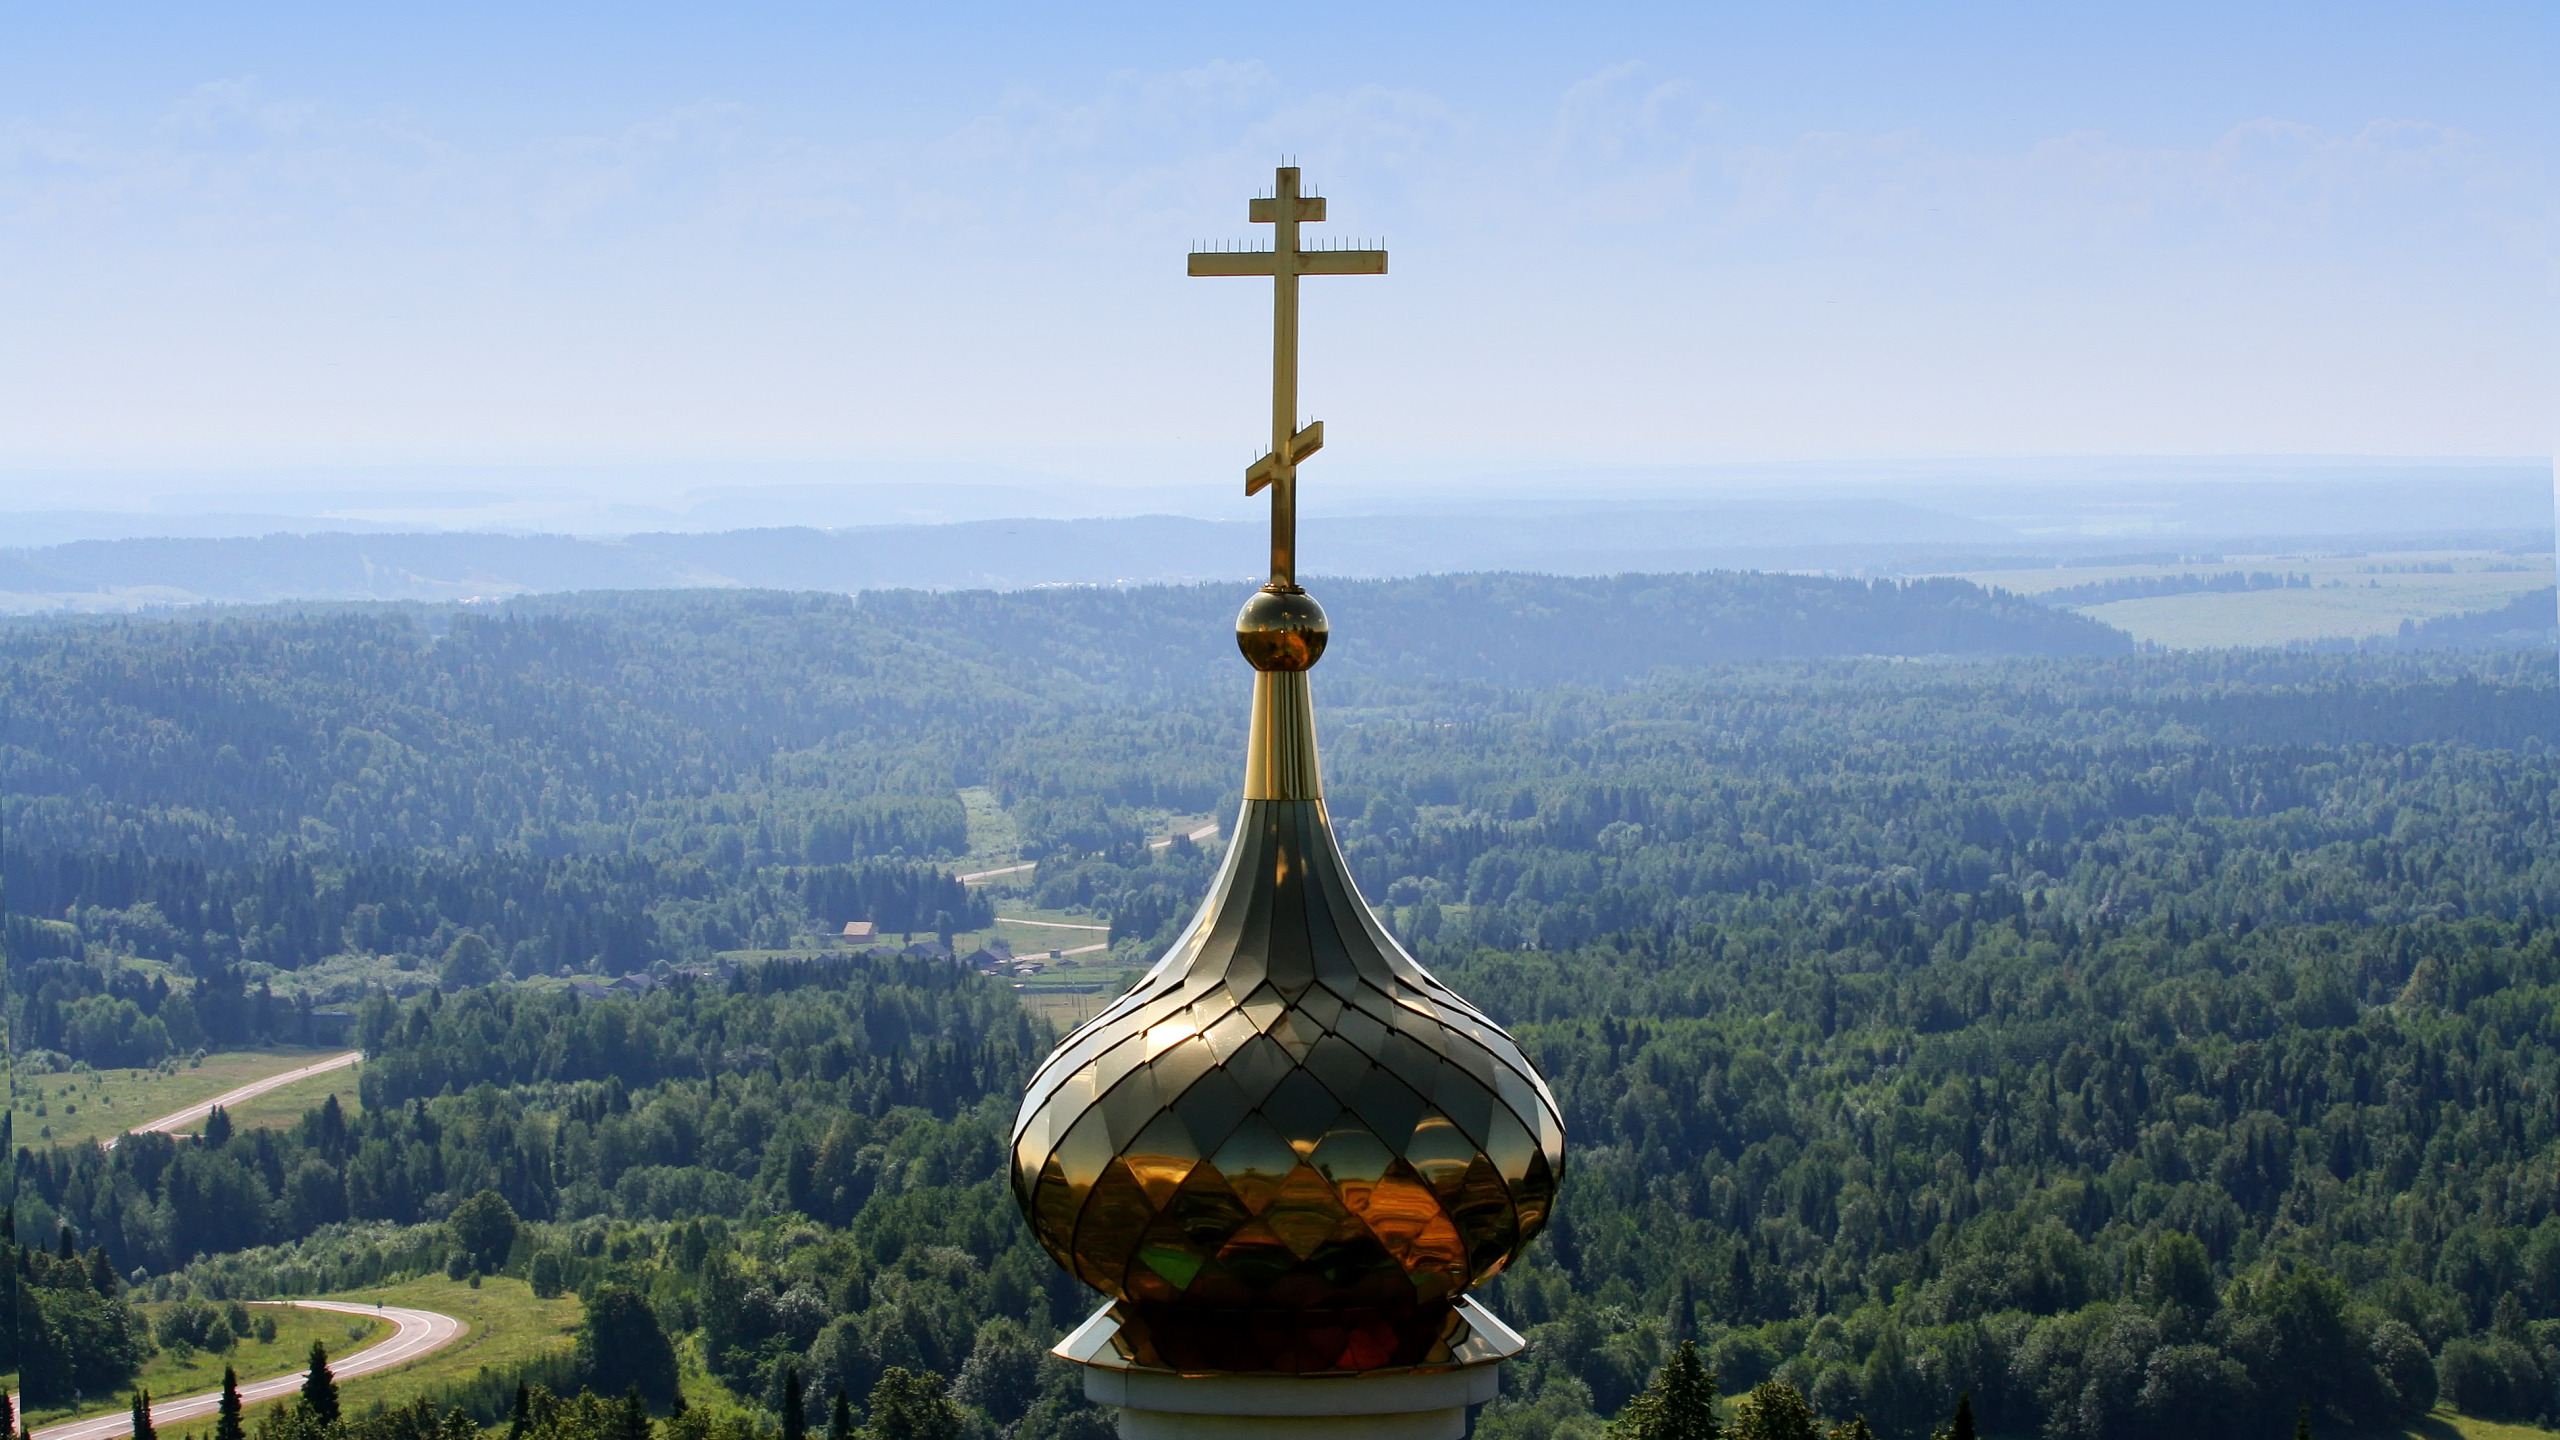 крест на куполе храма